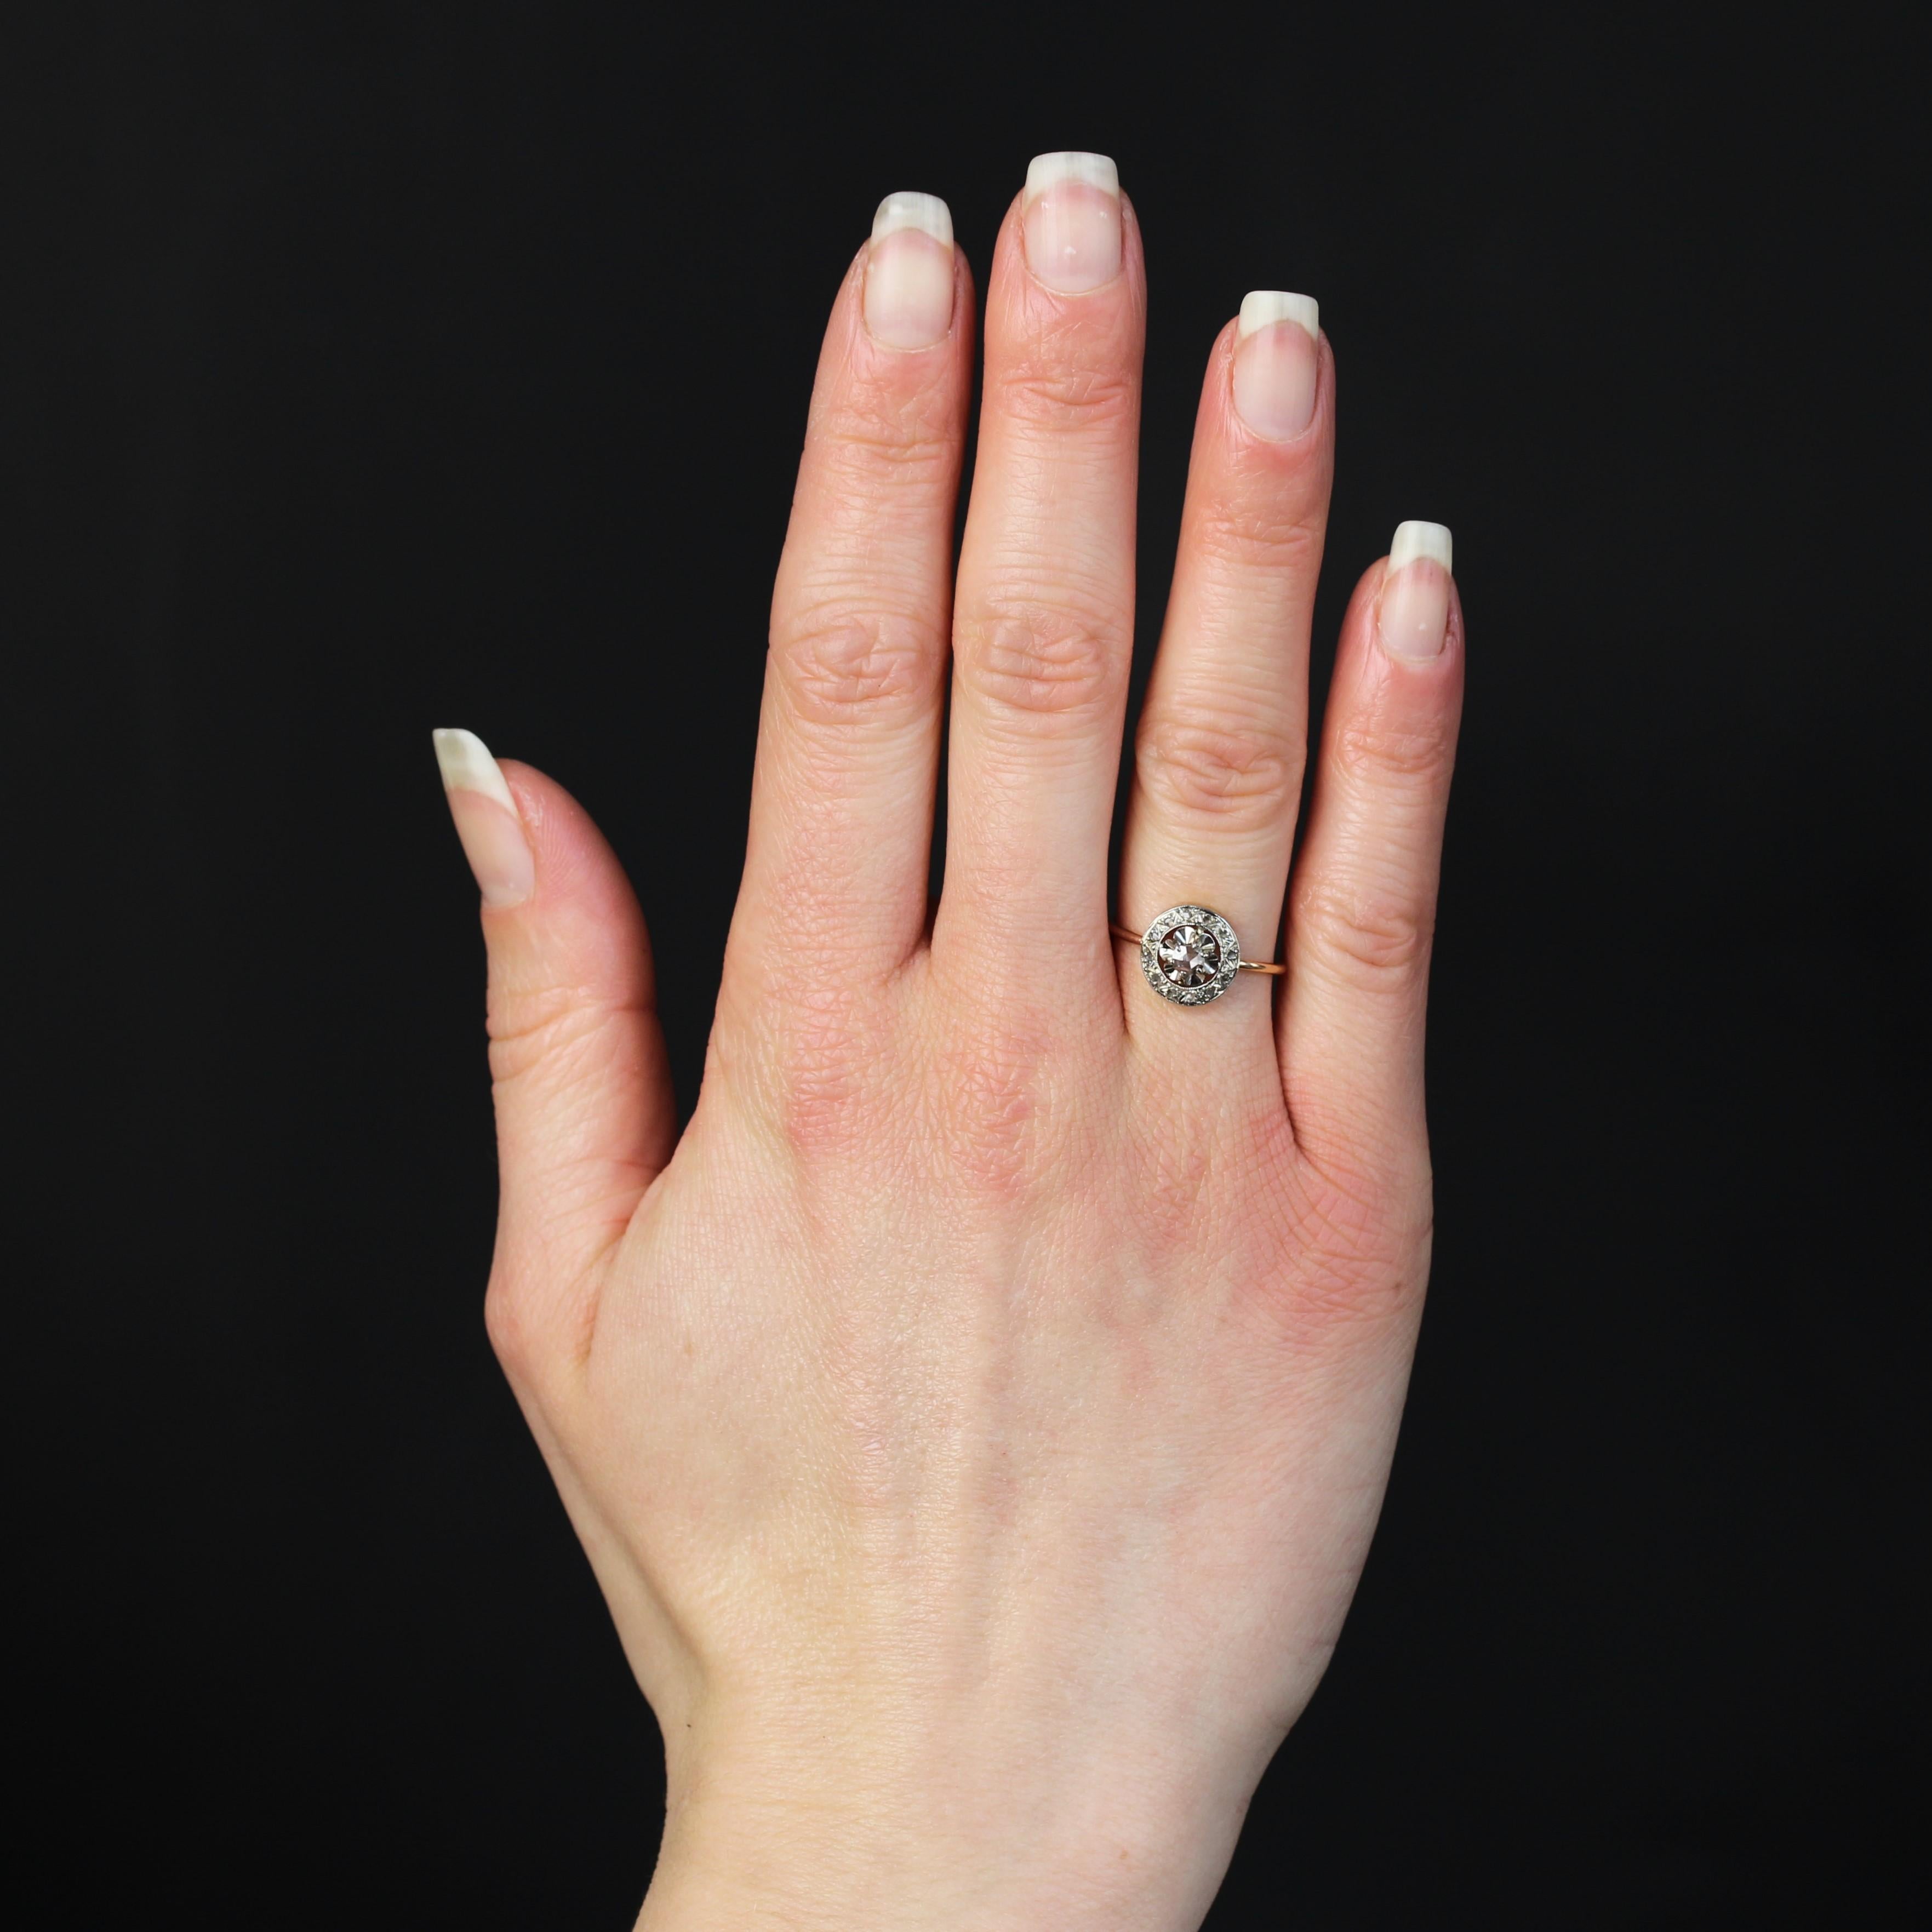 Ring aus 18 Karat Roségold und Platin.
Ein femininer antiker Ring in runder Form, besetzt mit Diamanten im Rosenschliff, der mittlere in einer Krallenfassung und die um ihn herum liegenden in einer ziselierten Fassung. Der Ring ist ein Runddraht und